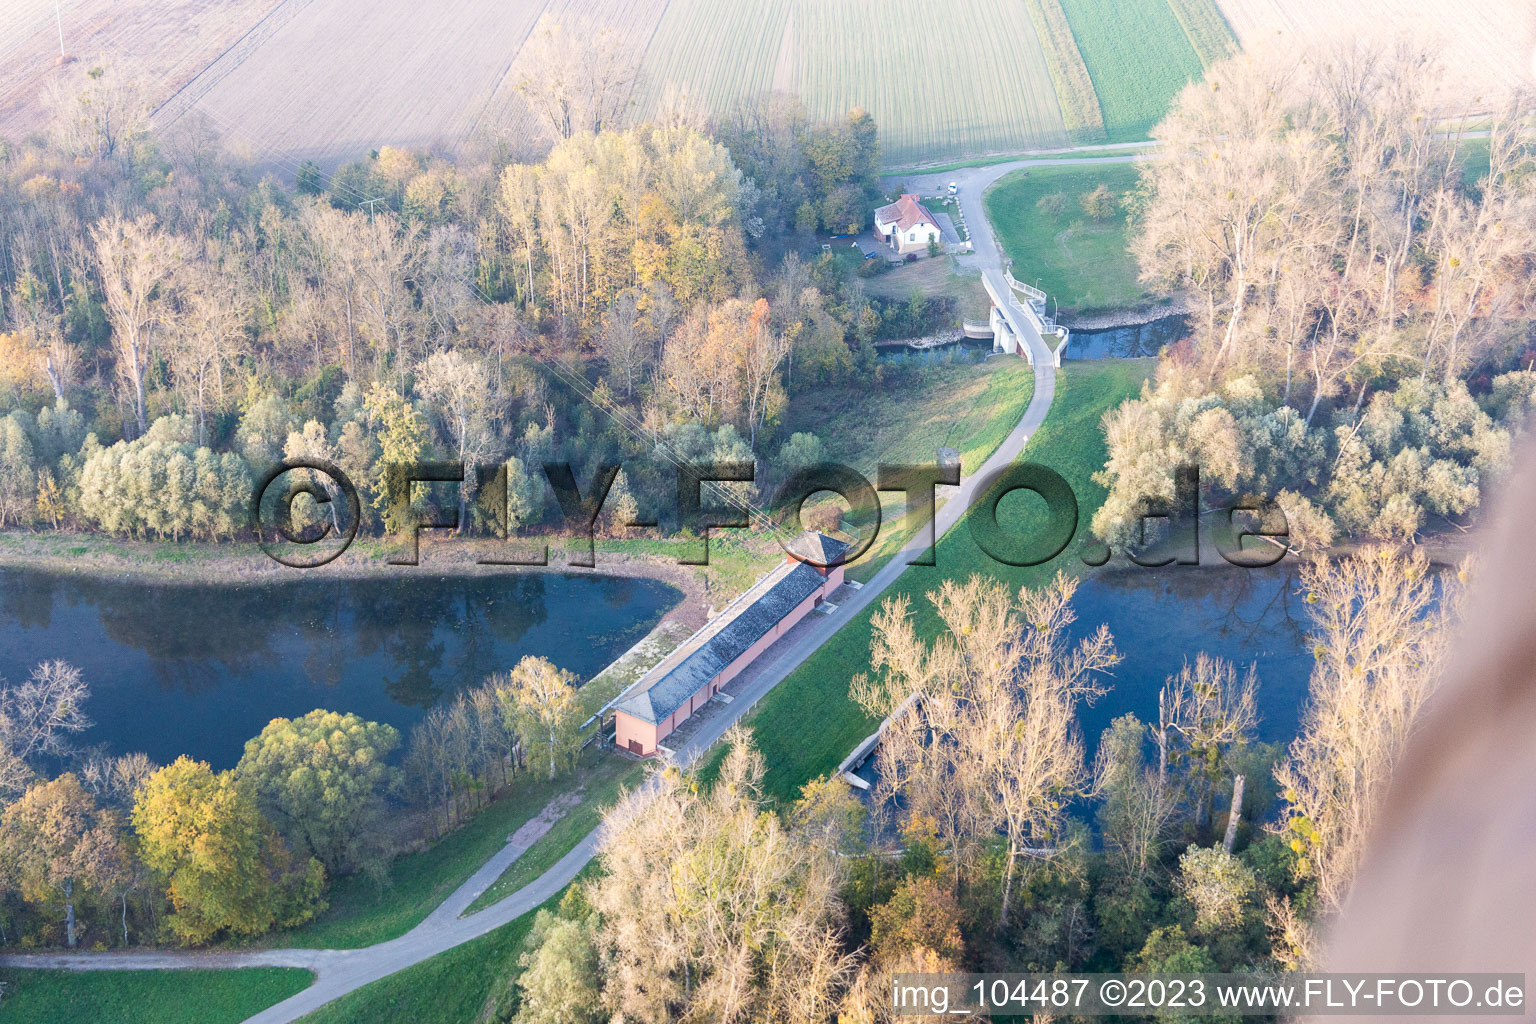 Ortsteil Sondernheim in Germersheim im Bundesland Rheinland-Pfalz, Deutschland aus der Luft betrachtet